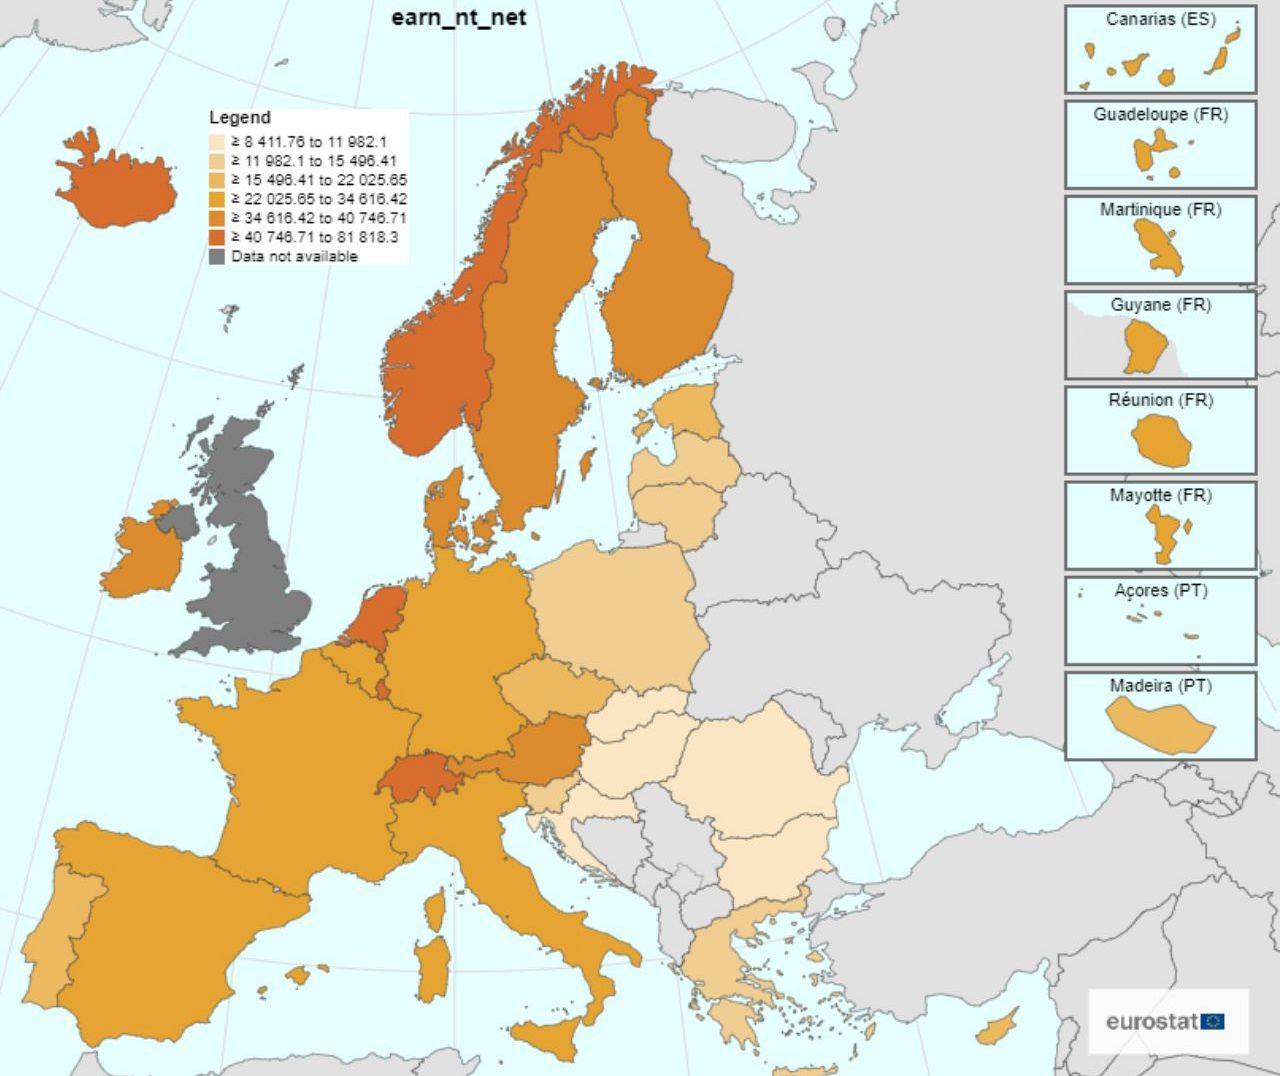 Roczny zysk netto w krajach europejskich